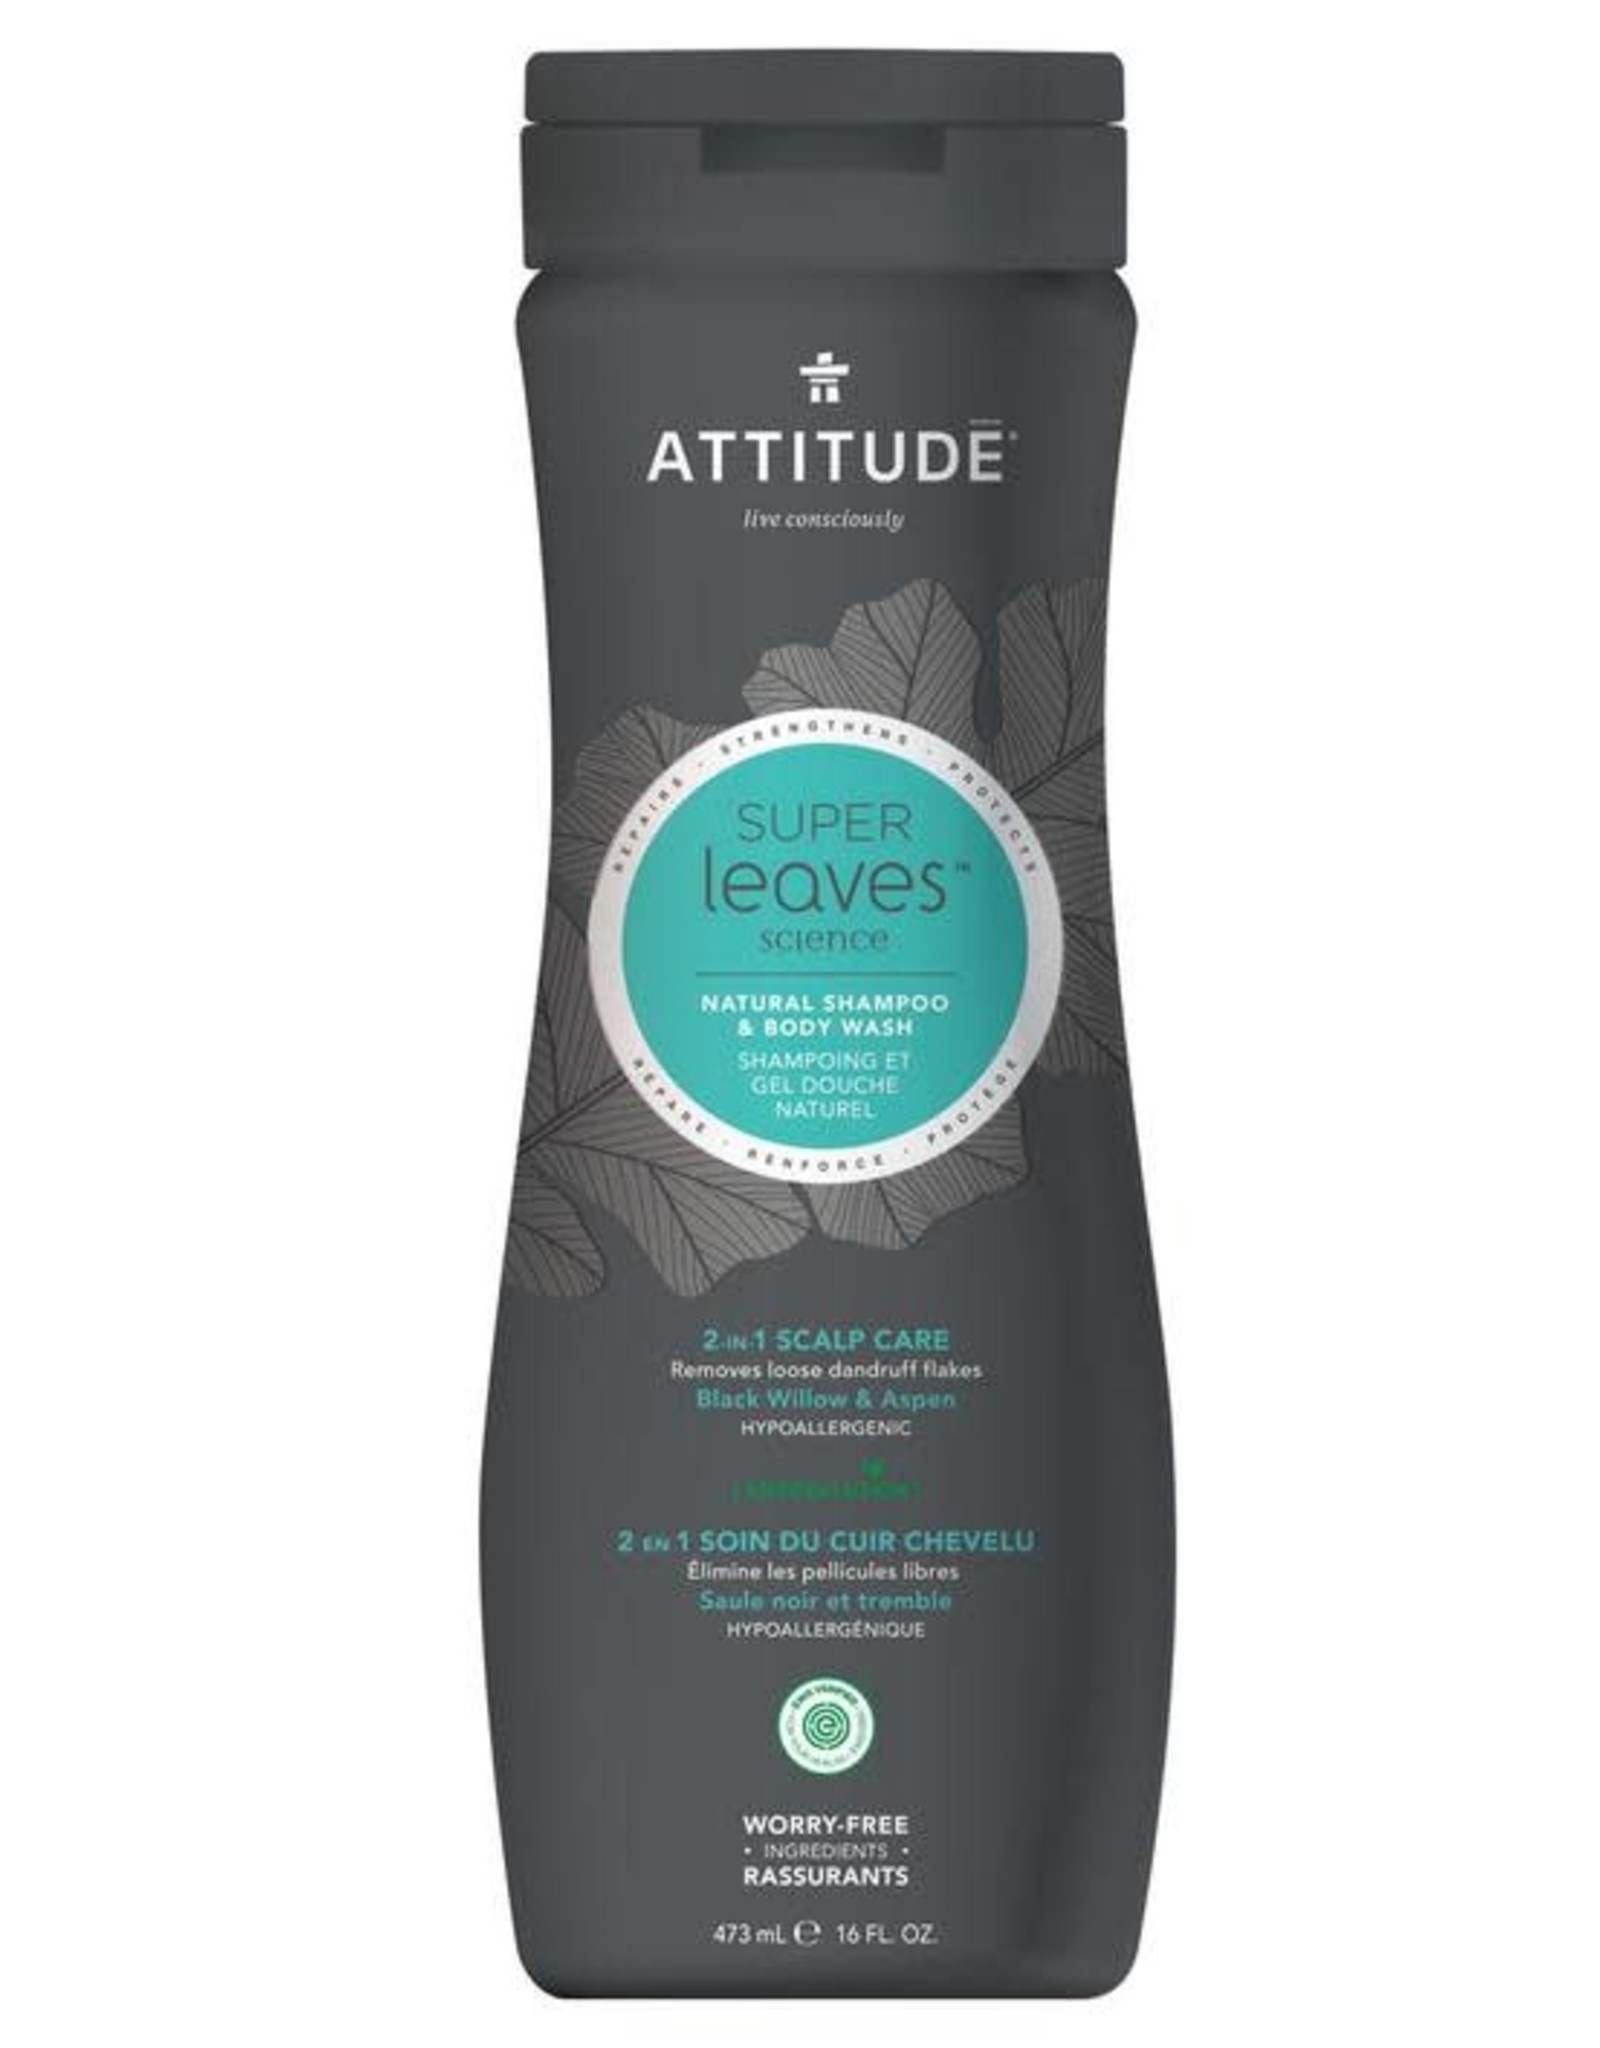 Attitude Super Leaves Natural Shampoo & Body Wash 2 in 1 Scalp Care 473ml